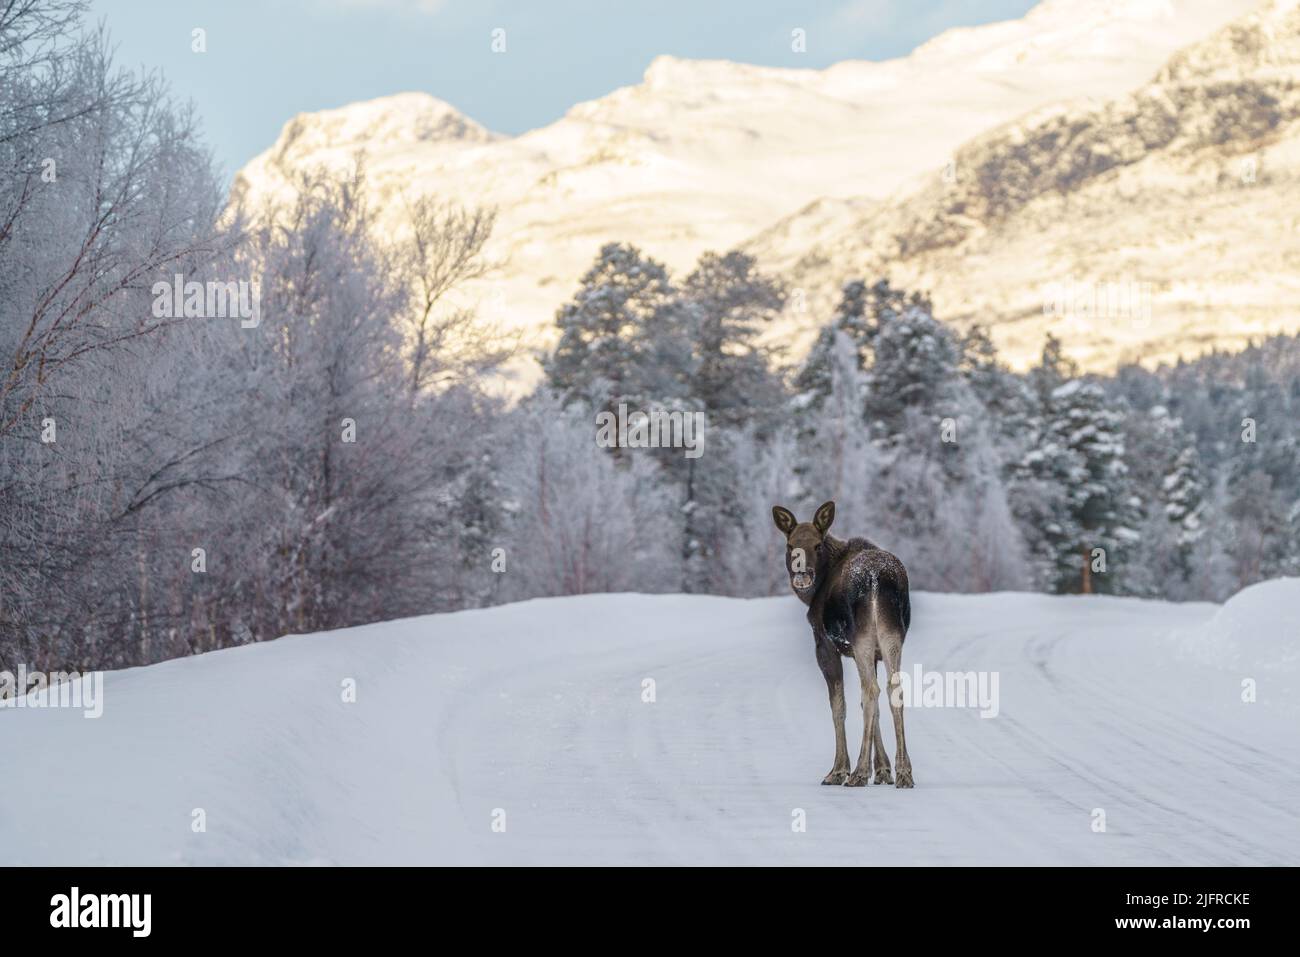 Junge Elche, Alces alces, stehend auf der Straße, die in Richtung Kamera, Wintersaison mit viel Schnee und Berg im Hintergrund, Stora sjöfallet n Stockfoto